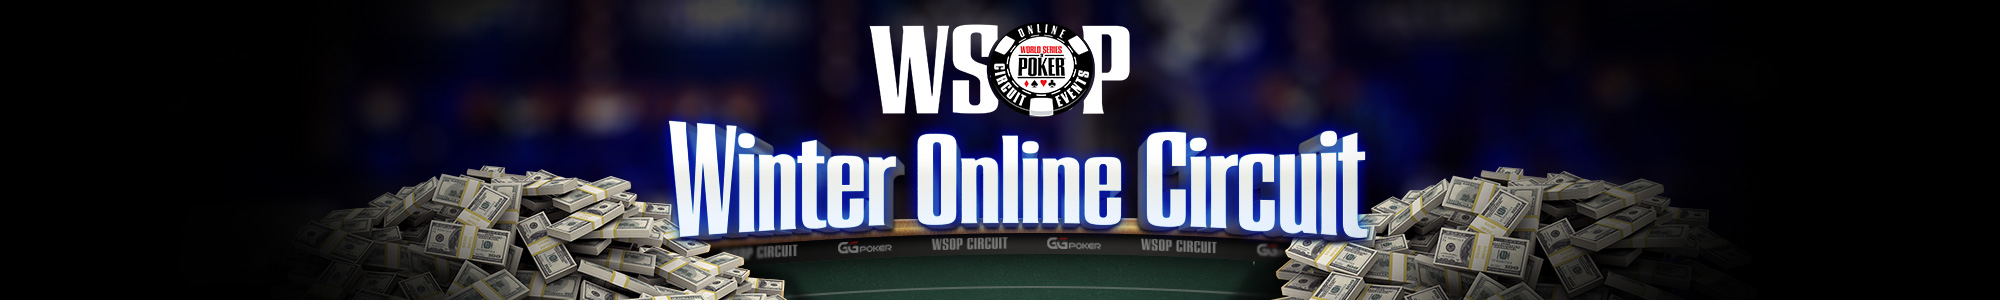 ggpoker poker online acara sirkuit musim dingin wsop